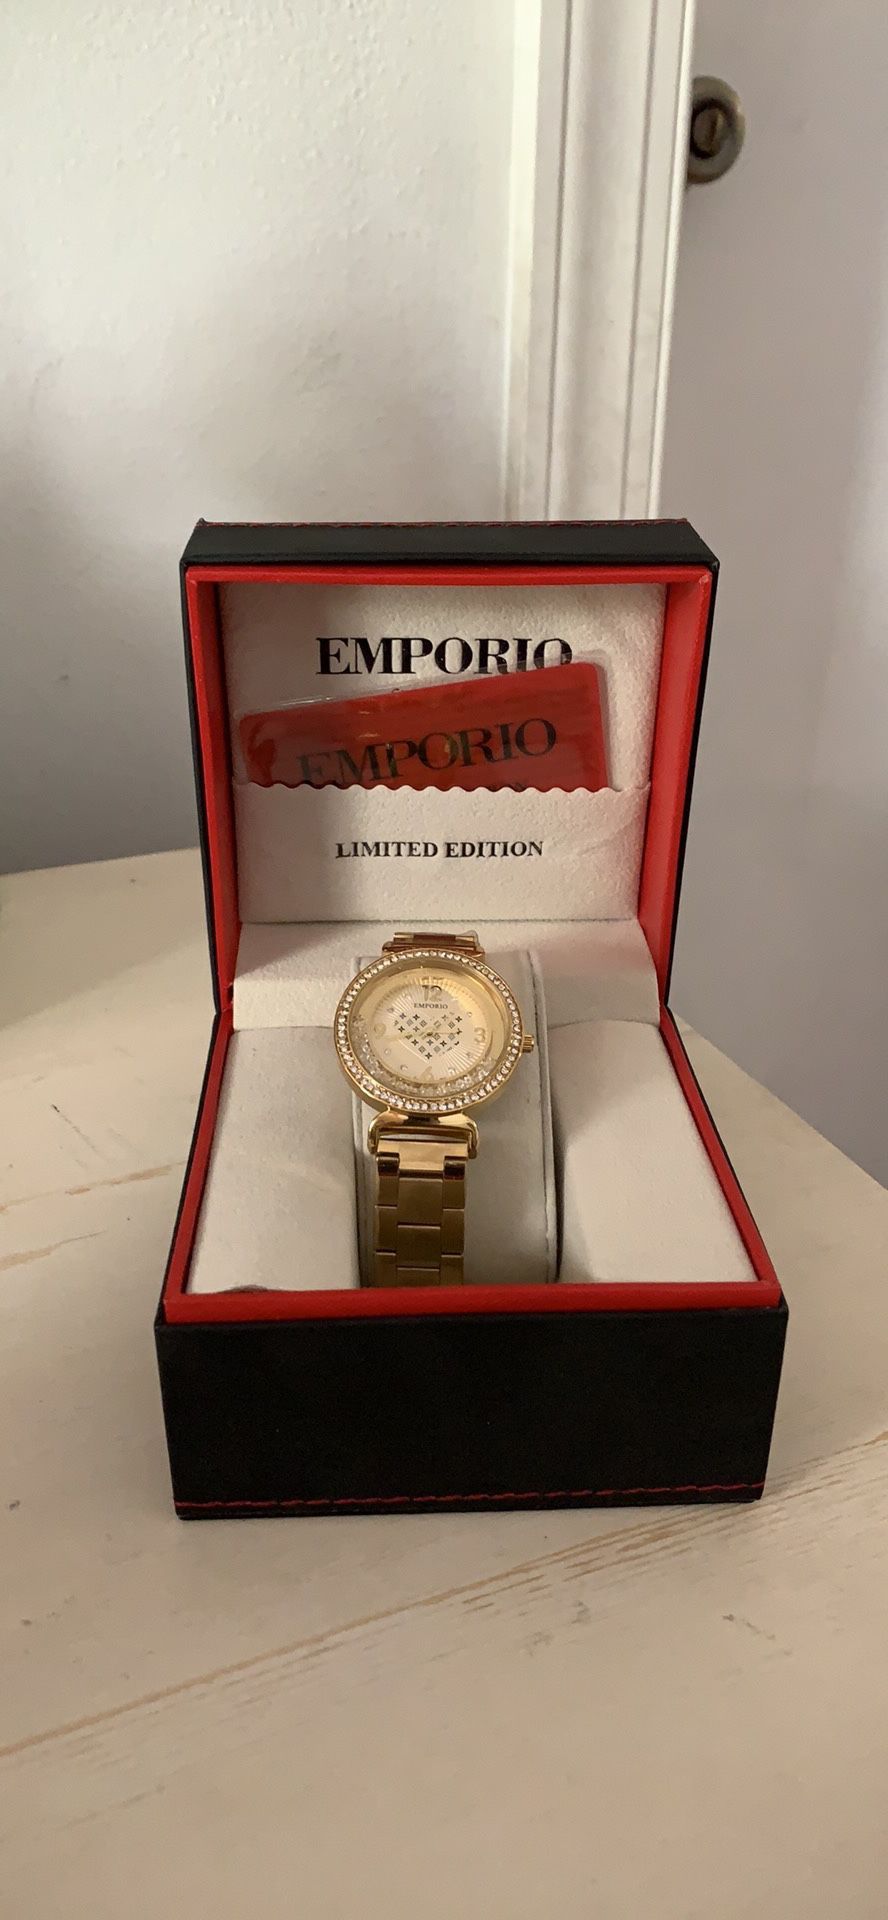 NEW Watch Emporio di Milano Limited Edition